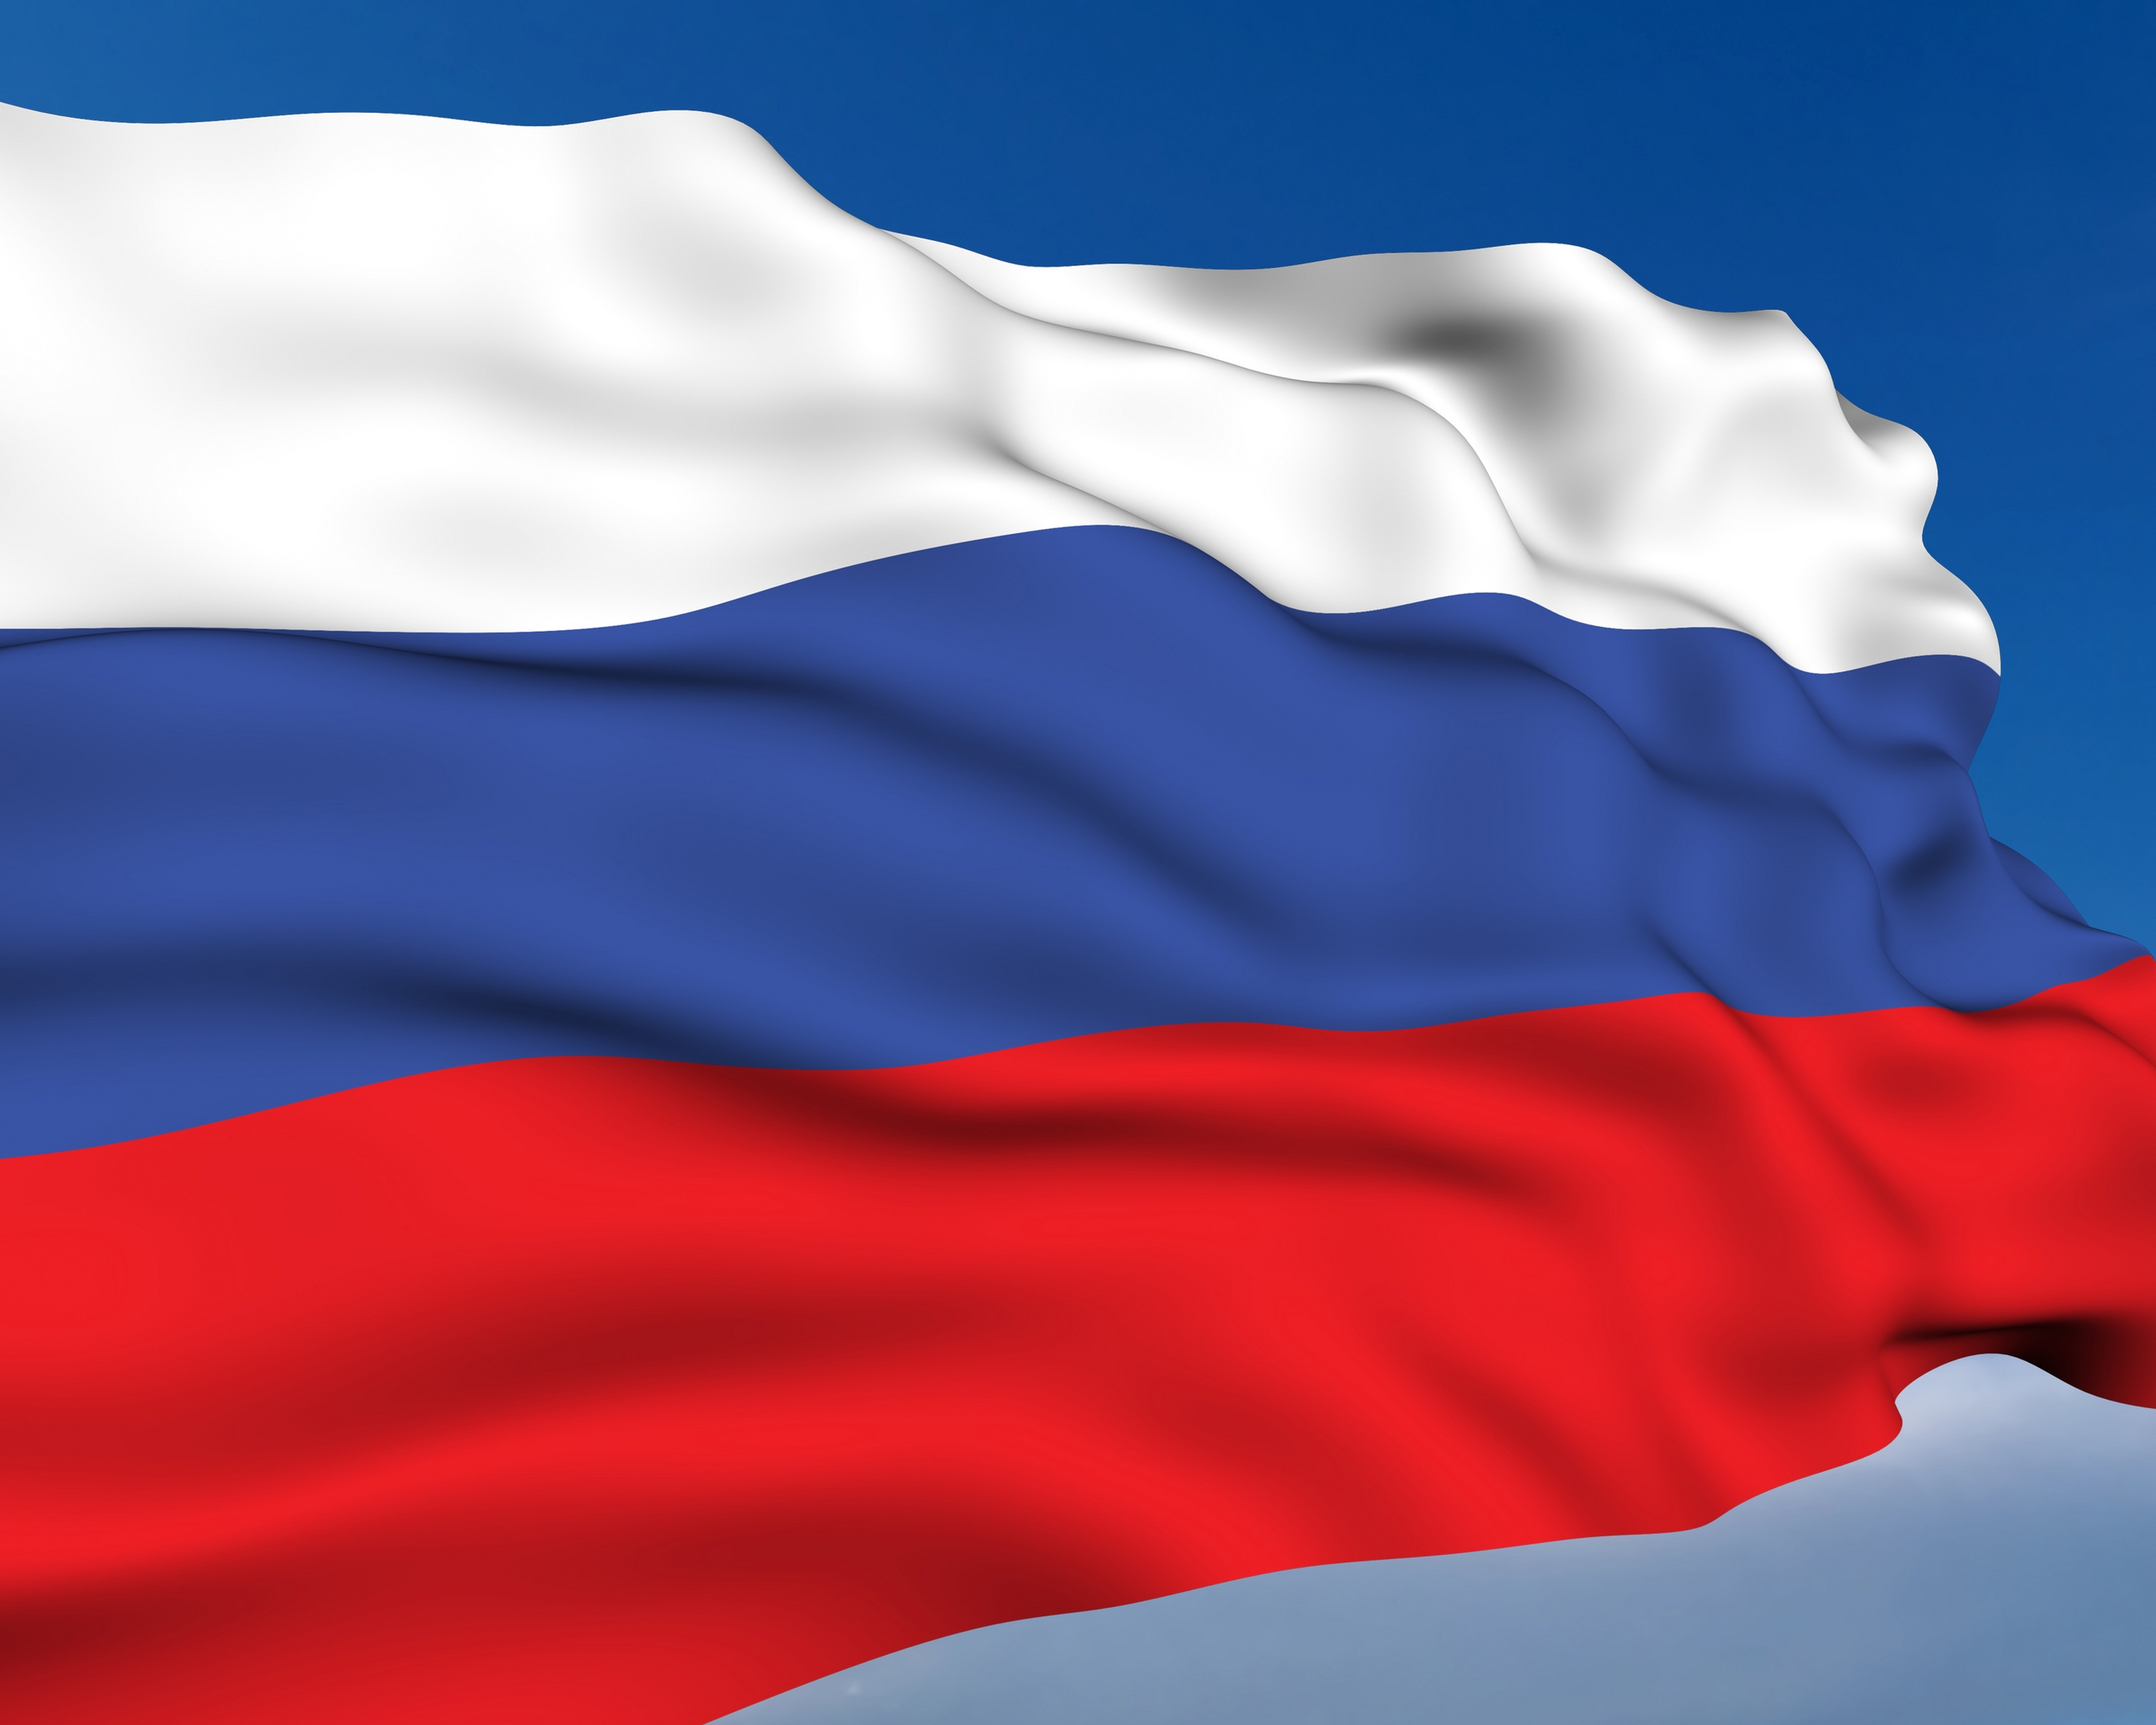 Картинка: Флаг, Россия, небо